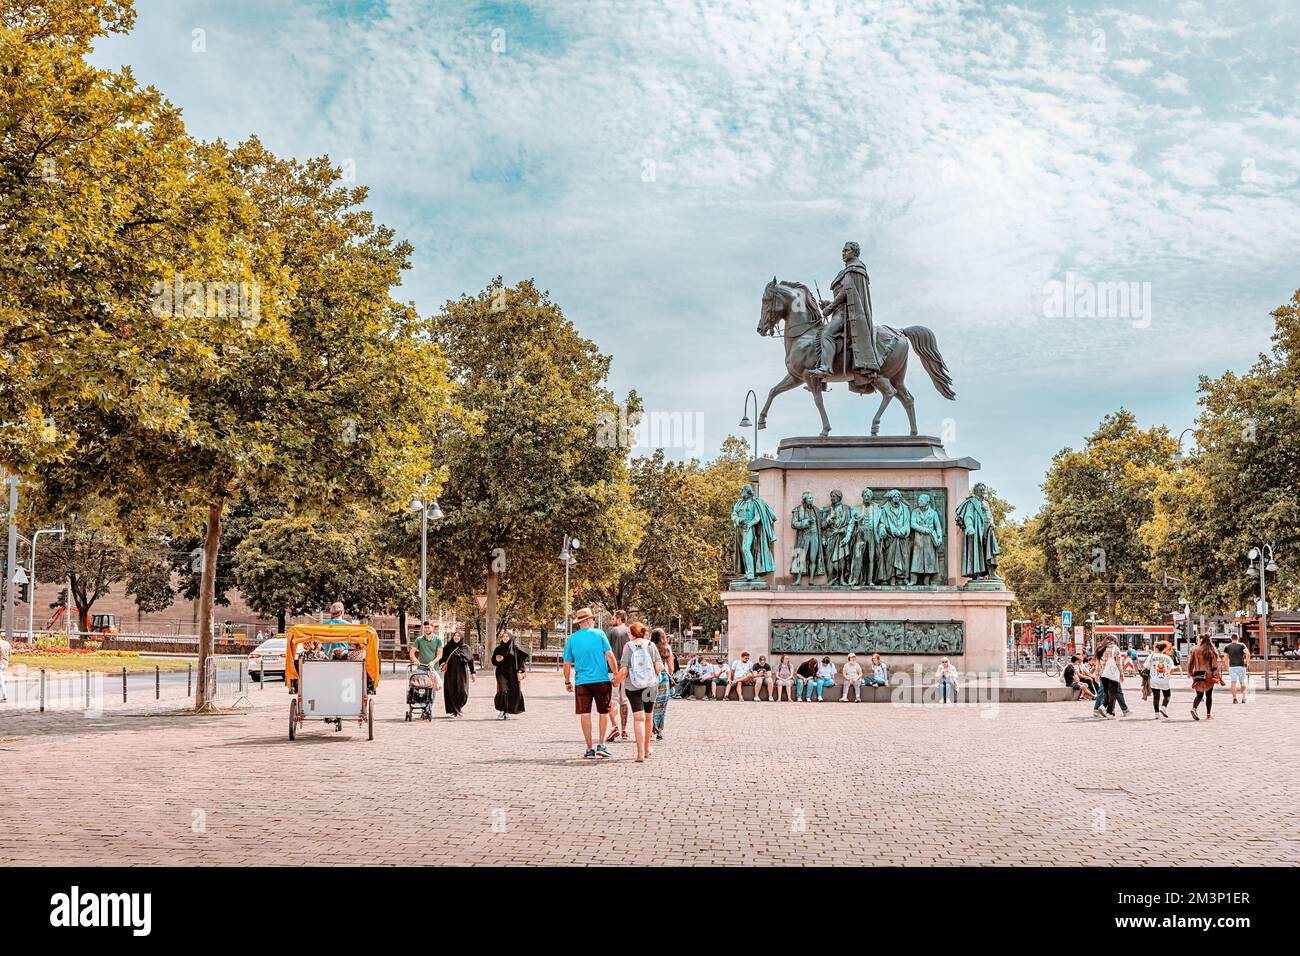 29 luglio 2022, Colonia, Germania: Statua equestre di Friedrich Wilhelm III e gente che cammina vicino alla piazza Foto Stock